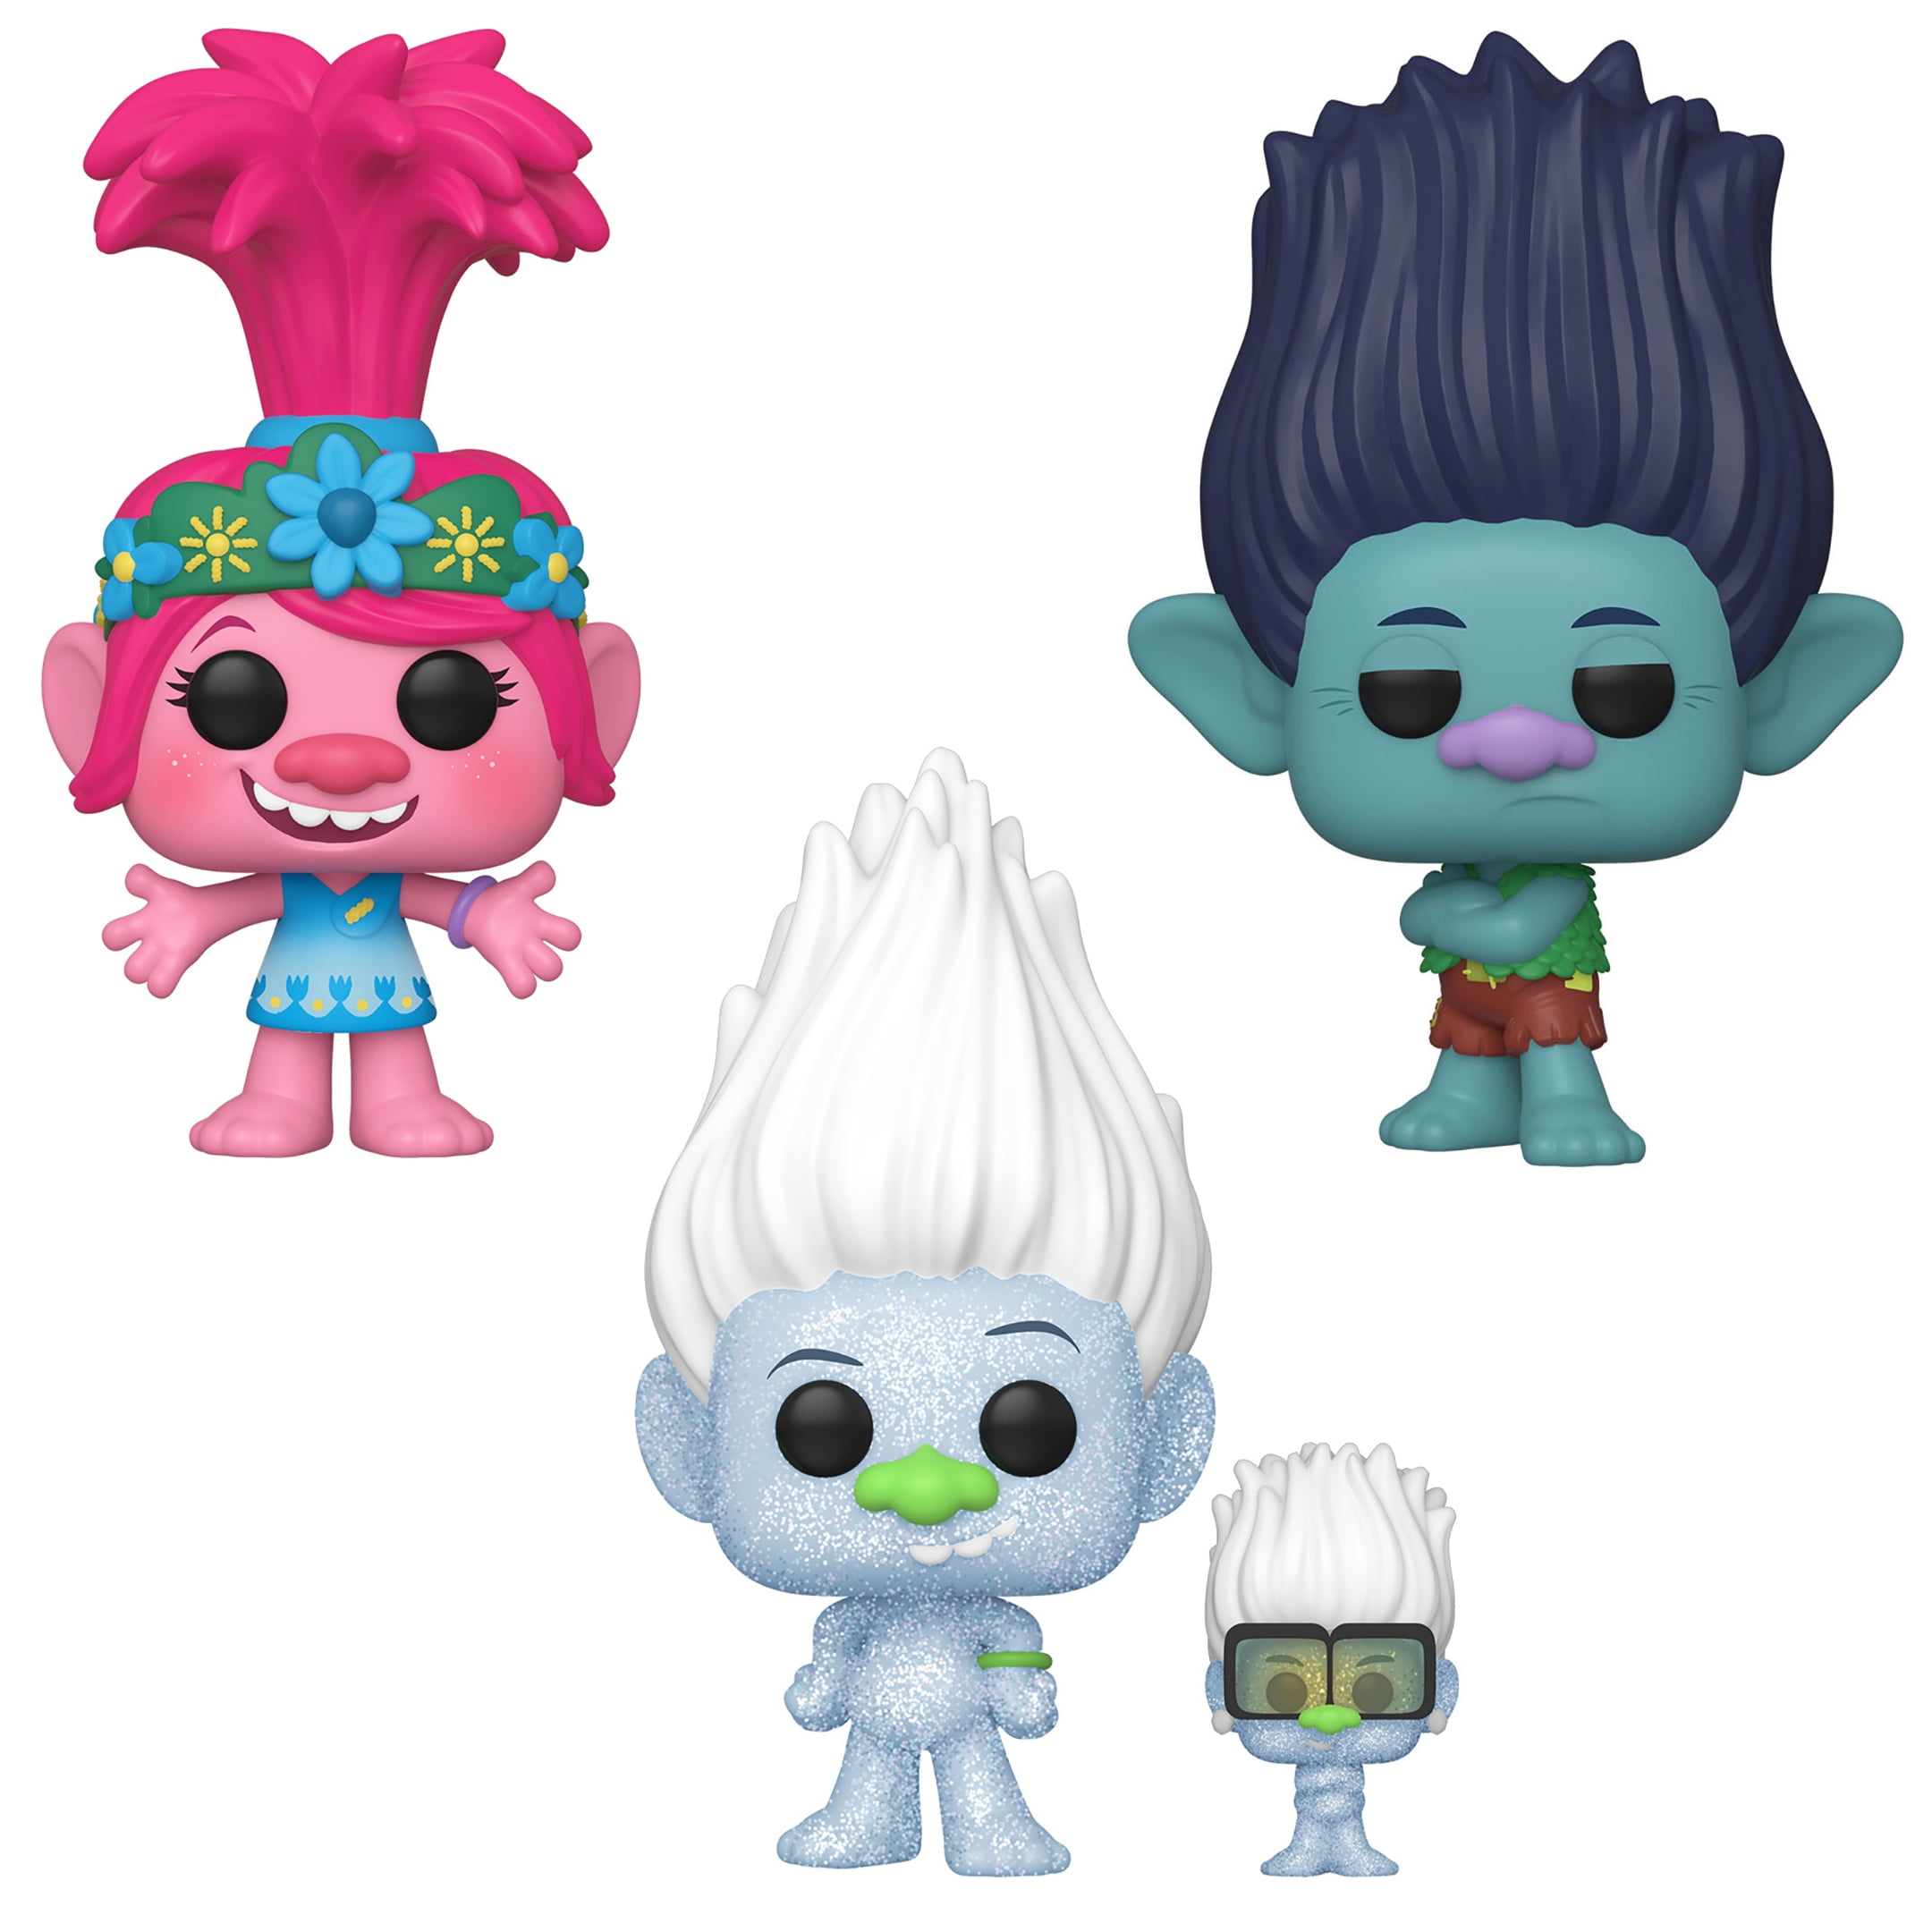 Poppy Trolls World Tour Toy New Movies: Funko Pop 